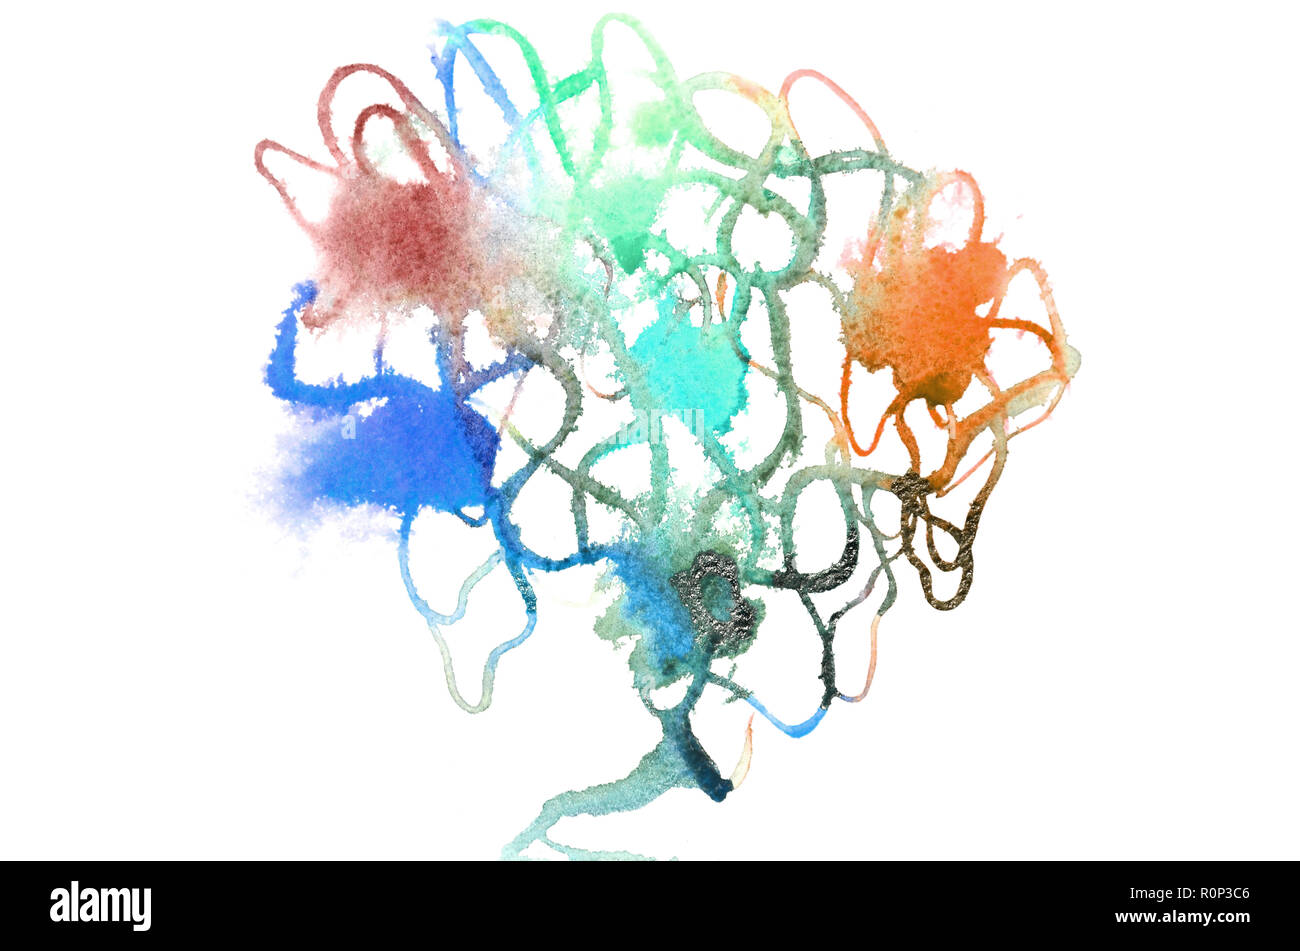 Image en arrière-plan à partir de taches d'aquarelle abstraite, formant une forme de couleurs différentes, comme un arbre . Banque D'Images